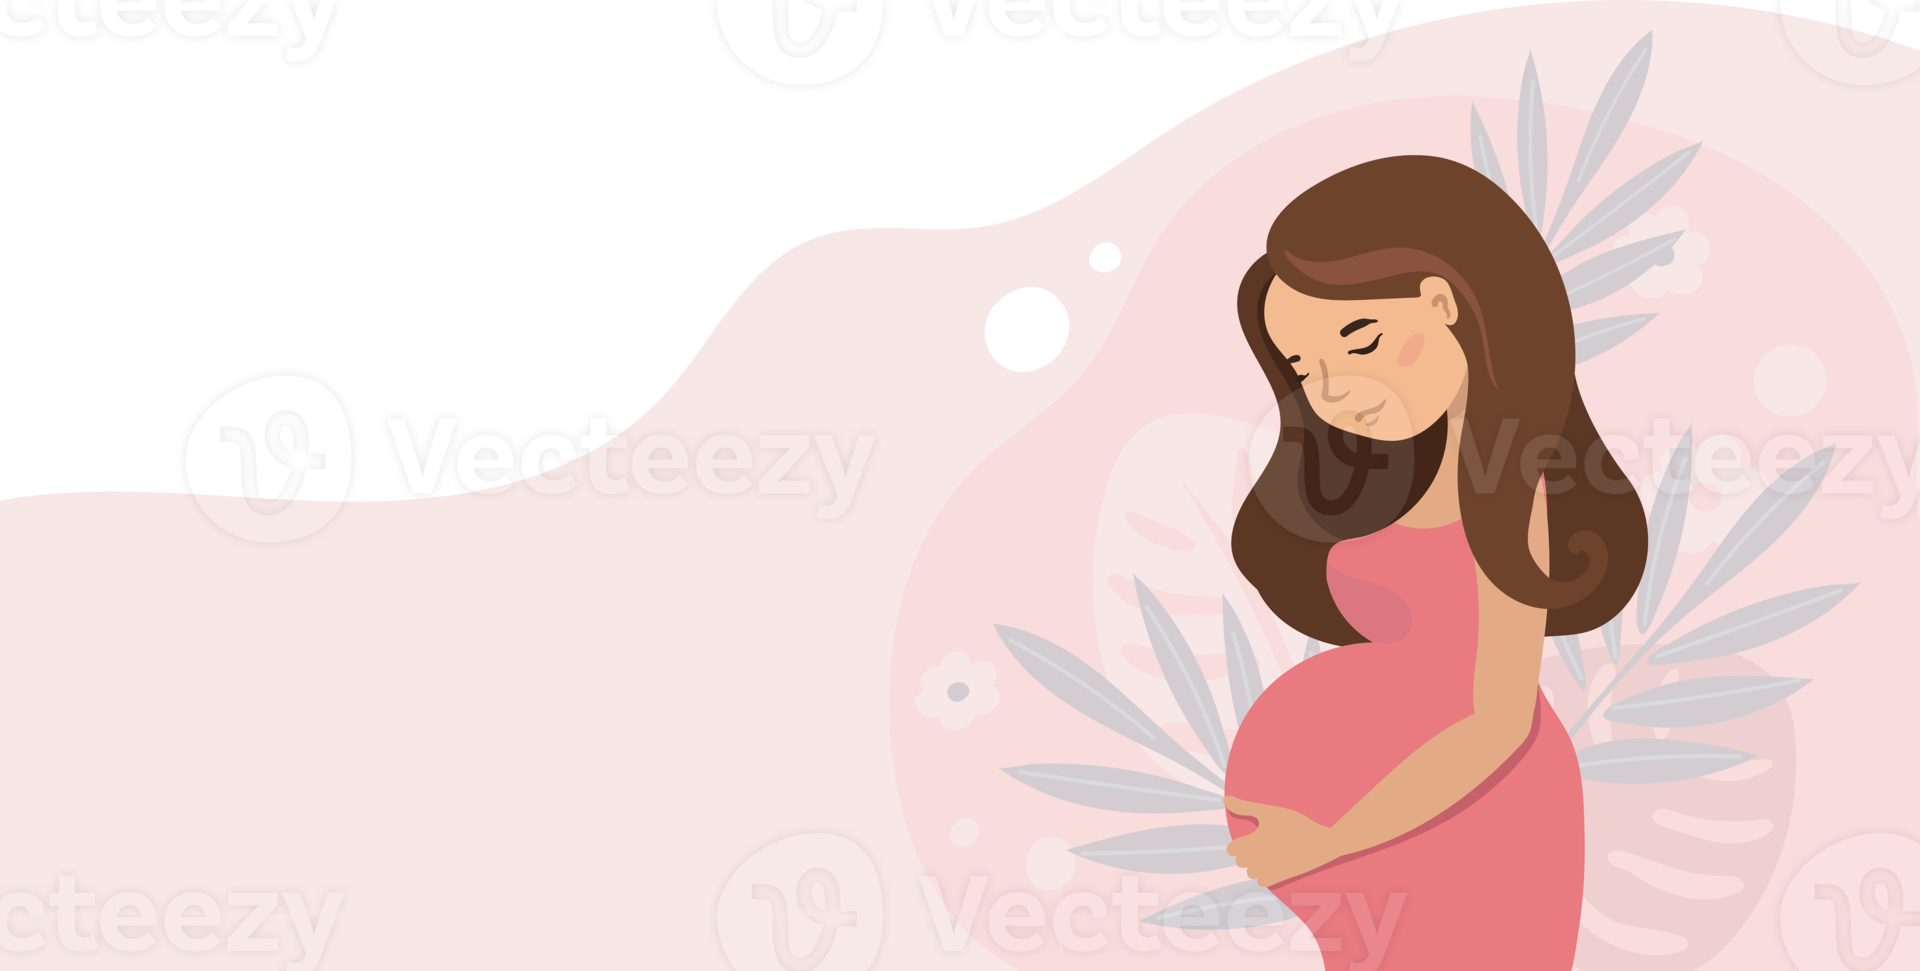 schwangere nette frau, die ihren bauch hält. schwangerschaftsillustration im karikaturstil. png